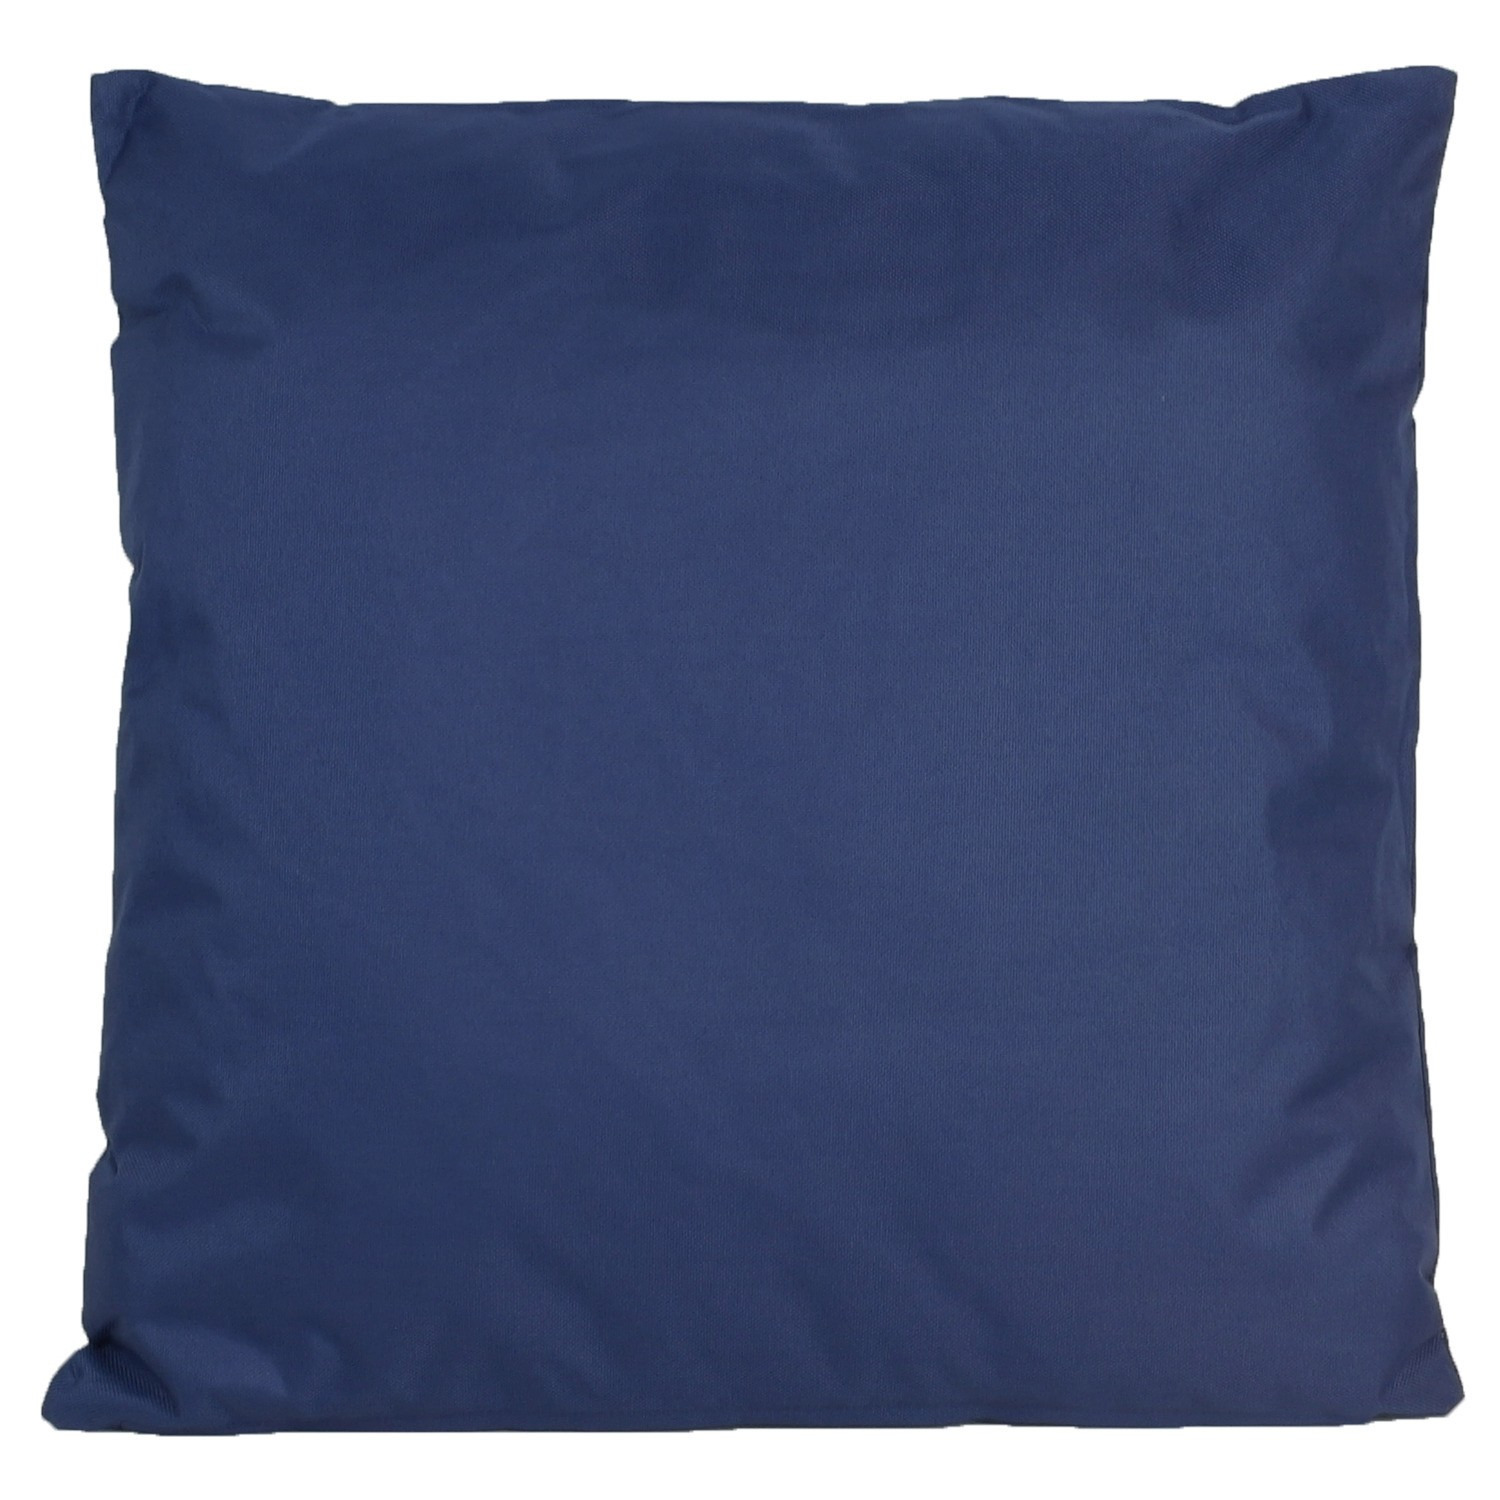 1x Buiten-woonkamer-slaapkamer kussens in het donkerblauw 45 x 45 cm